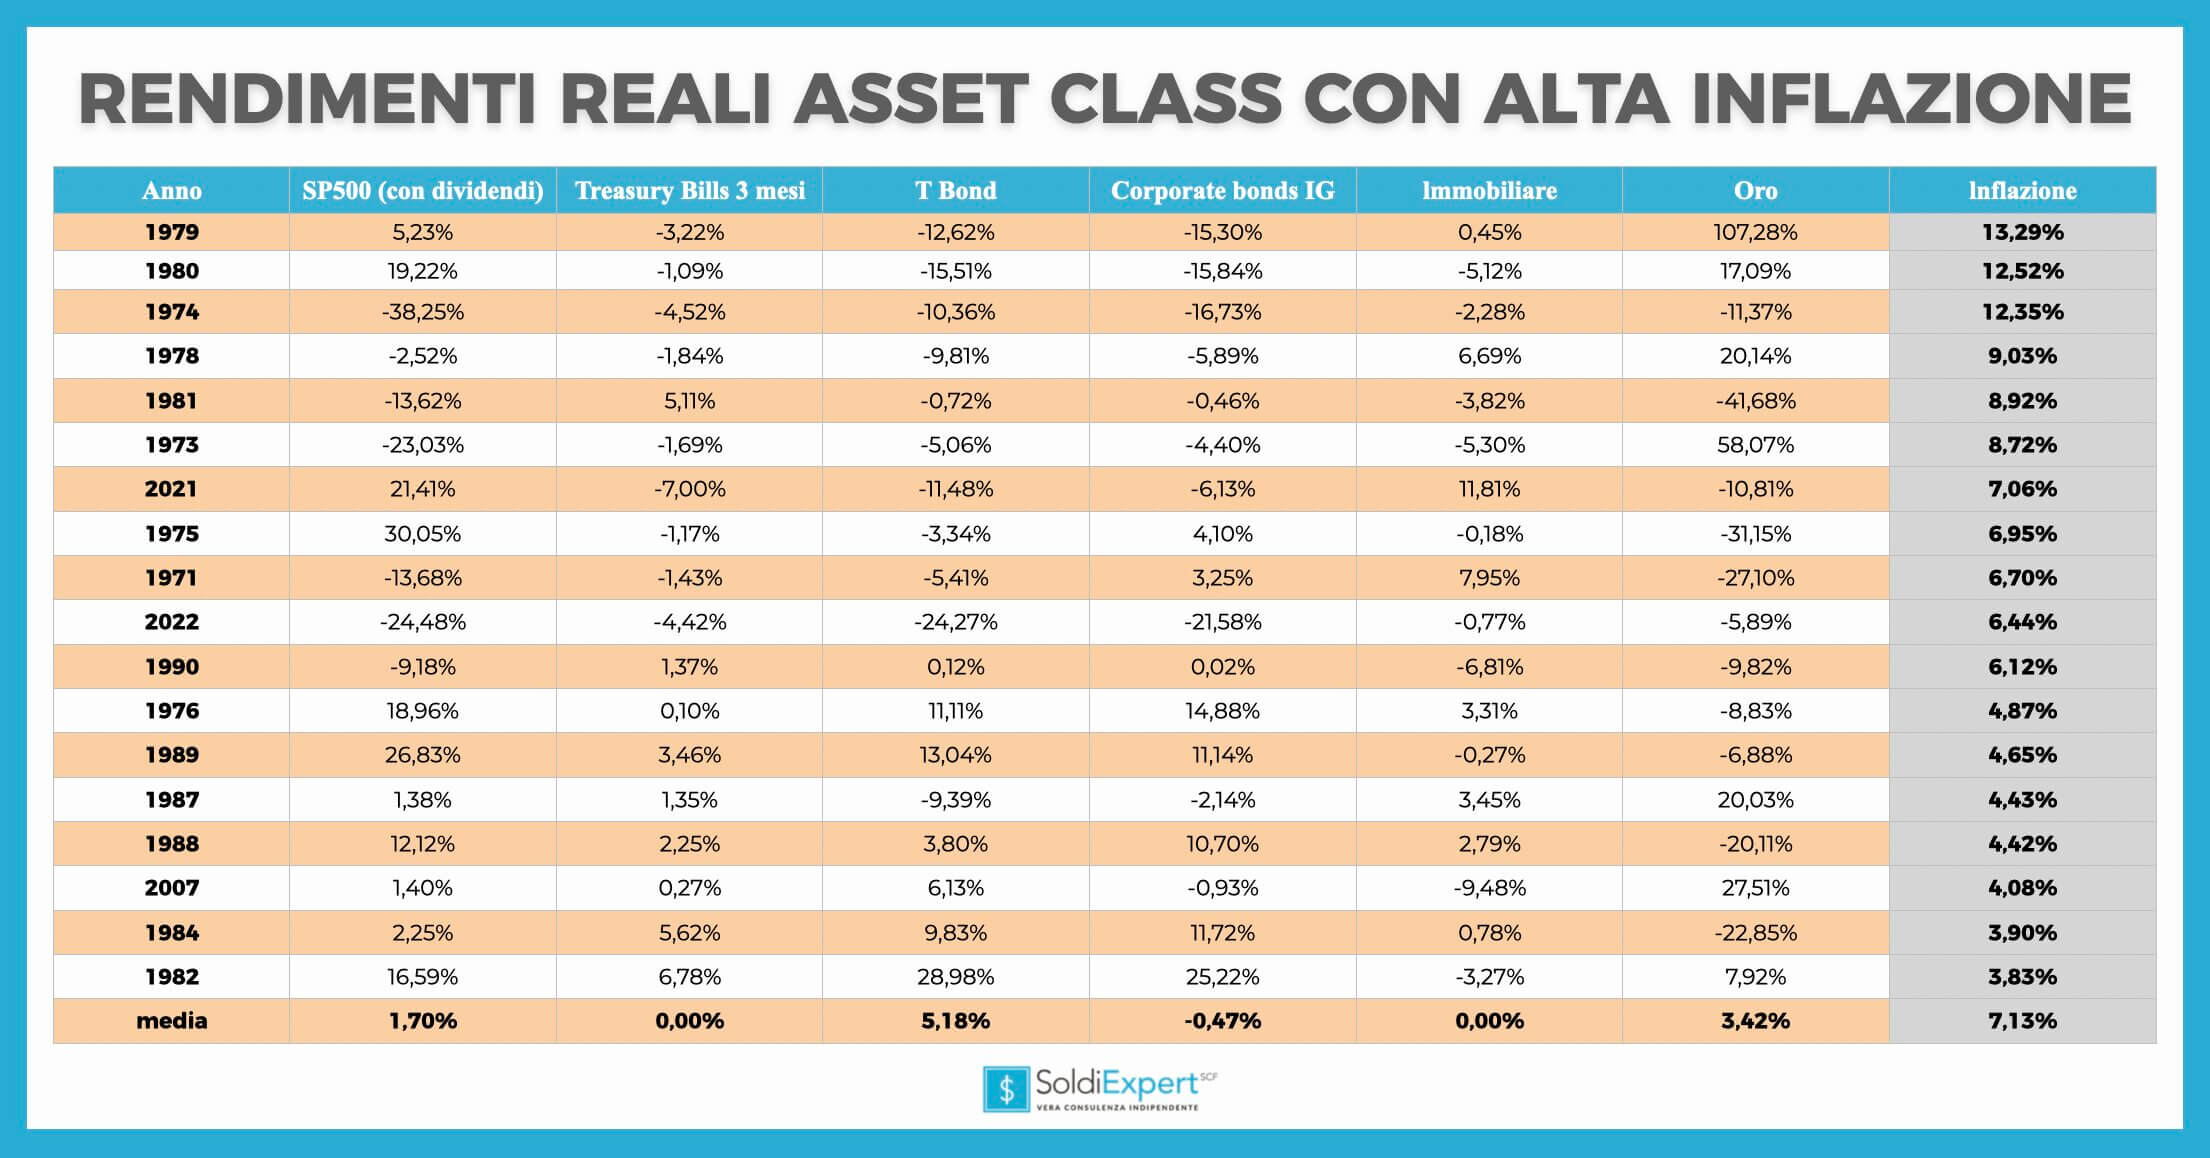 rendimenti reali delle diverse asset class nei periodi con alta inflazione